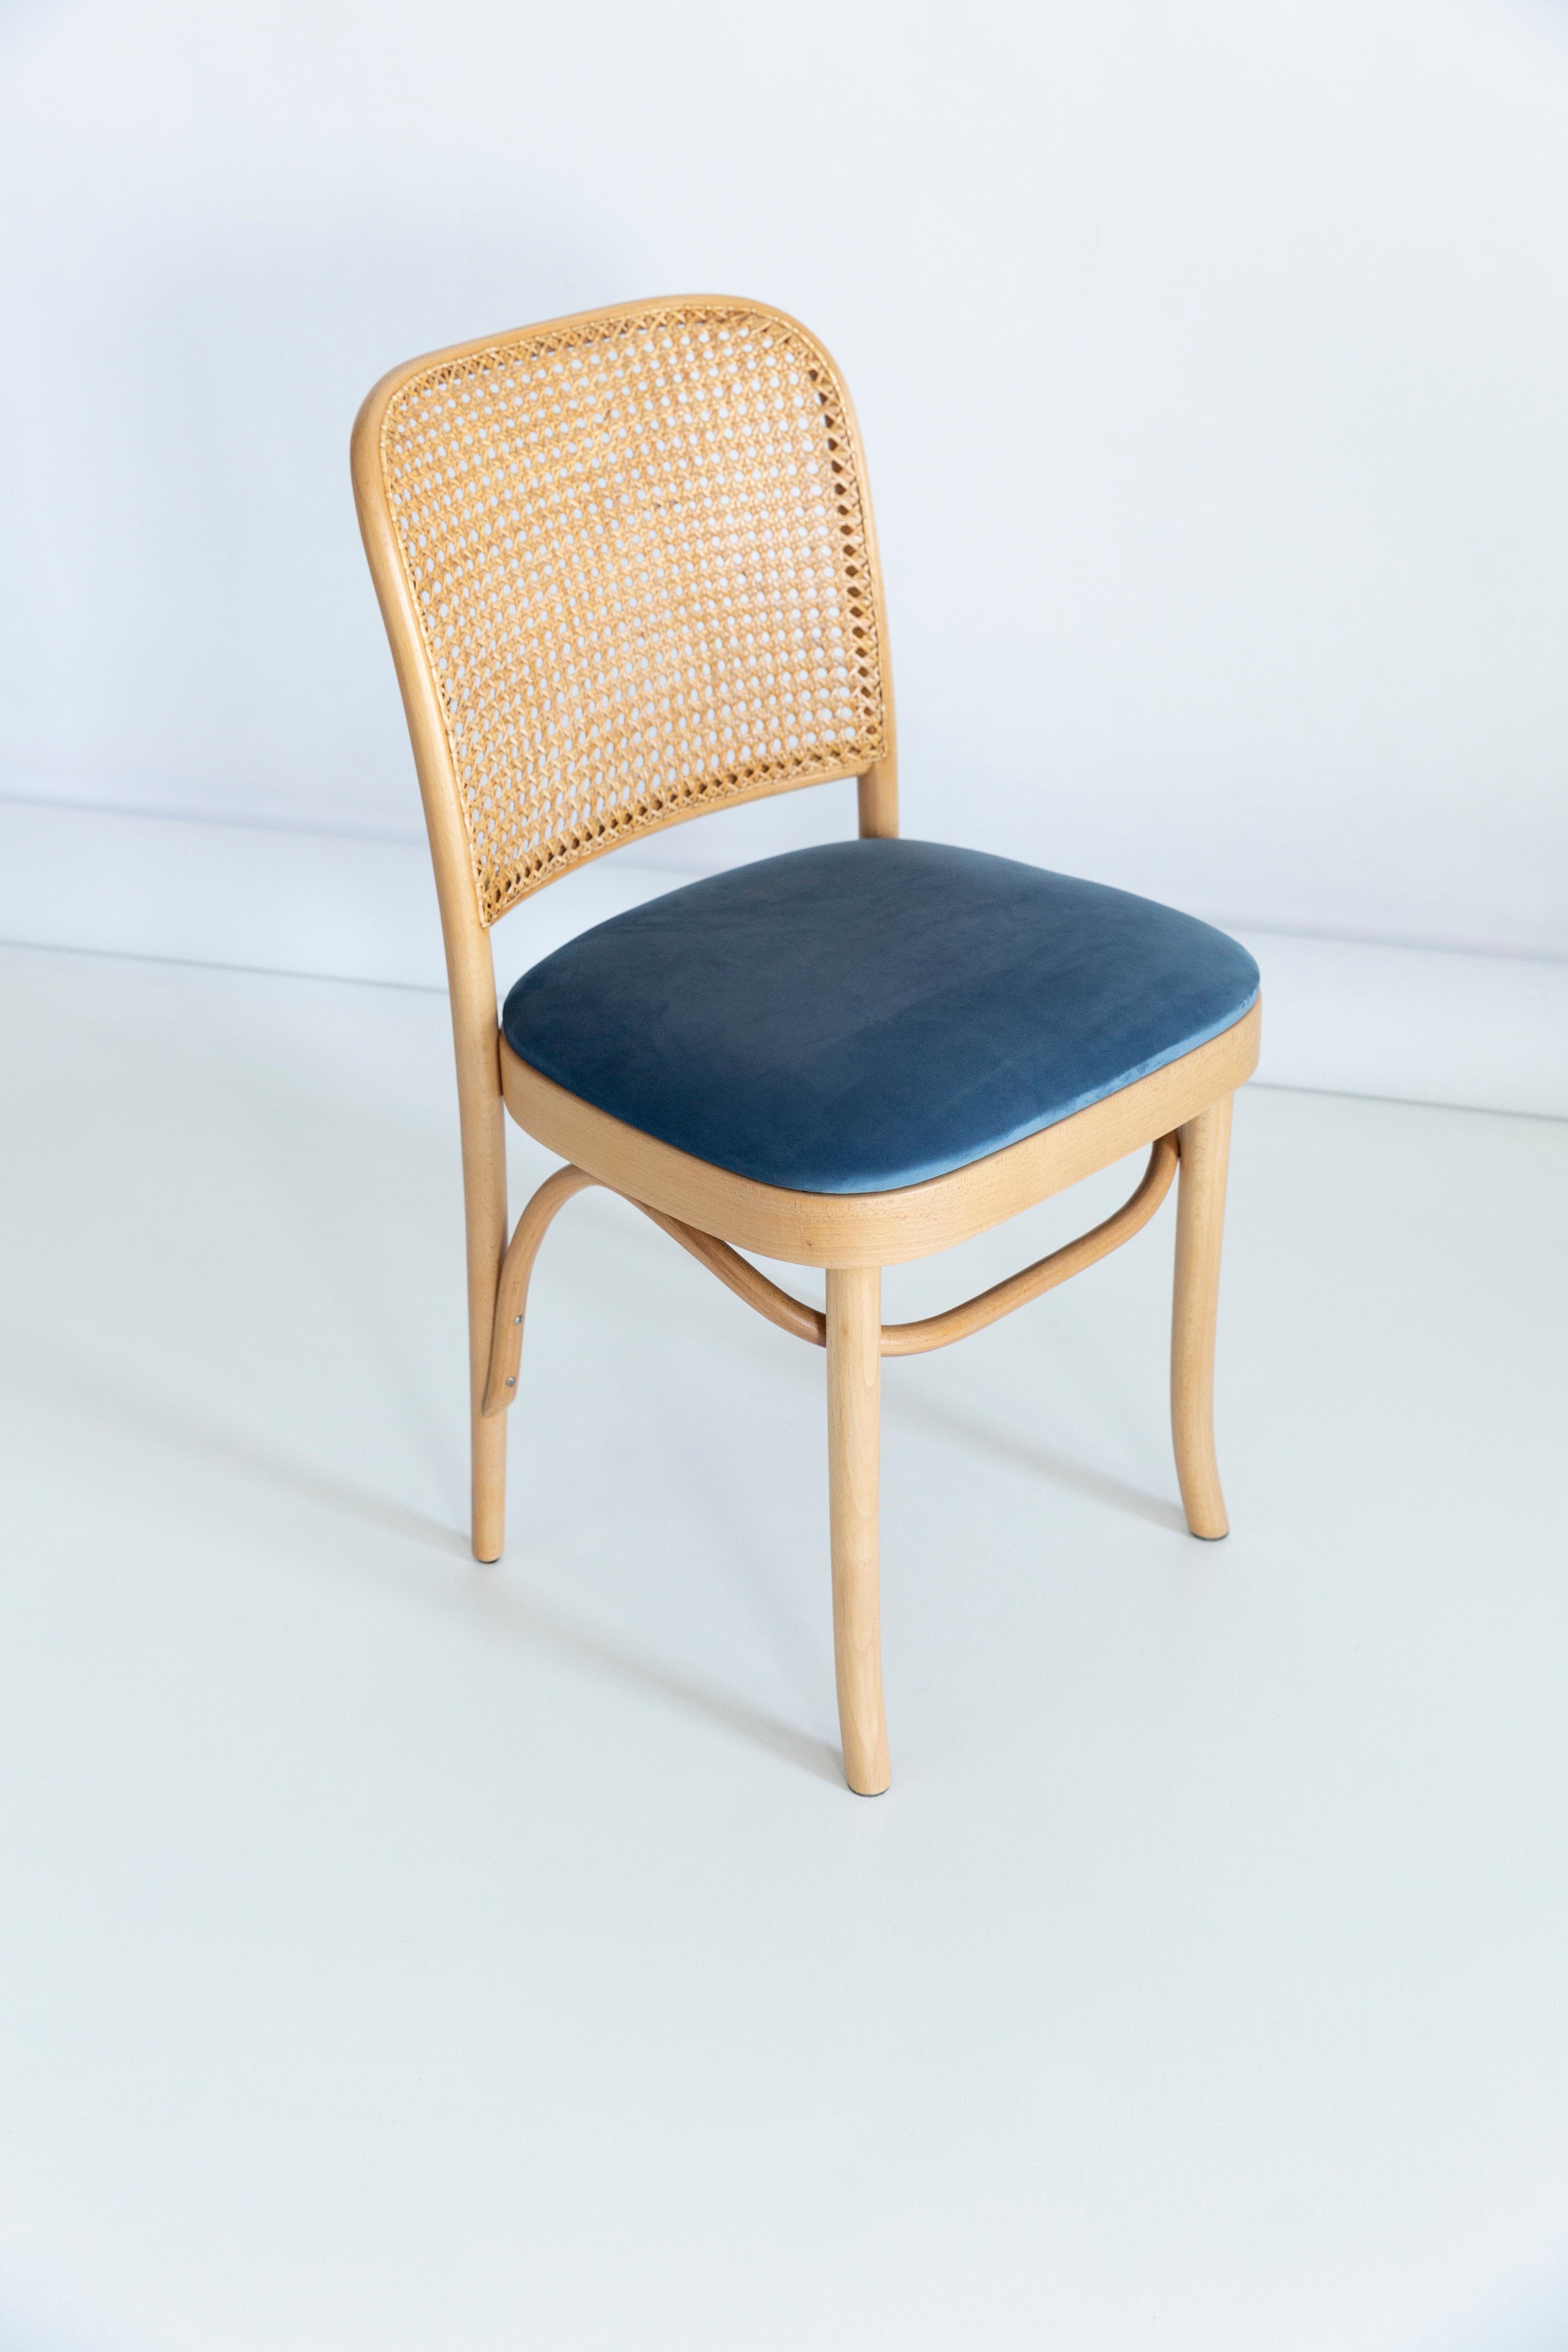 Schöner Stuhl aus Rattan, Samt und Holz. Sie wurden in der Holzverarbeitungsfabrik Thonet hergestellt und von uns gründlich renoviert. Die Konstruktion ist aus mit Wasserbeize hellbraun gefärbtem Buchenholz gefertigt. Die Stühle sind mit einem